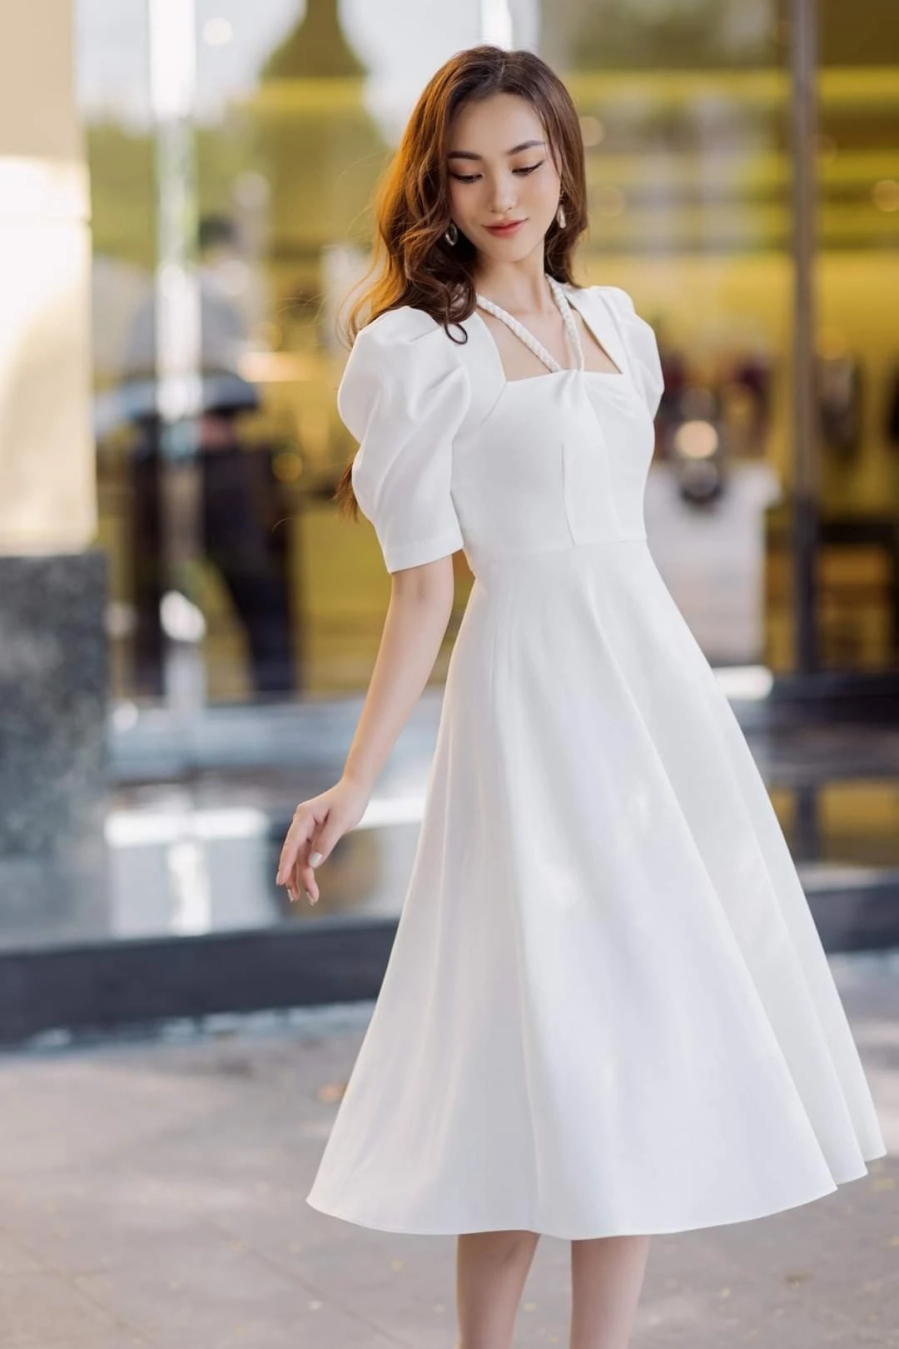 Chiếc váy trắng là lựa chọn thời trang không bao giờ lỗi mốt và phù hợp cho mọi lứa tuổi